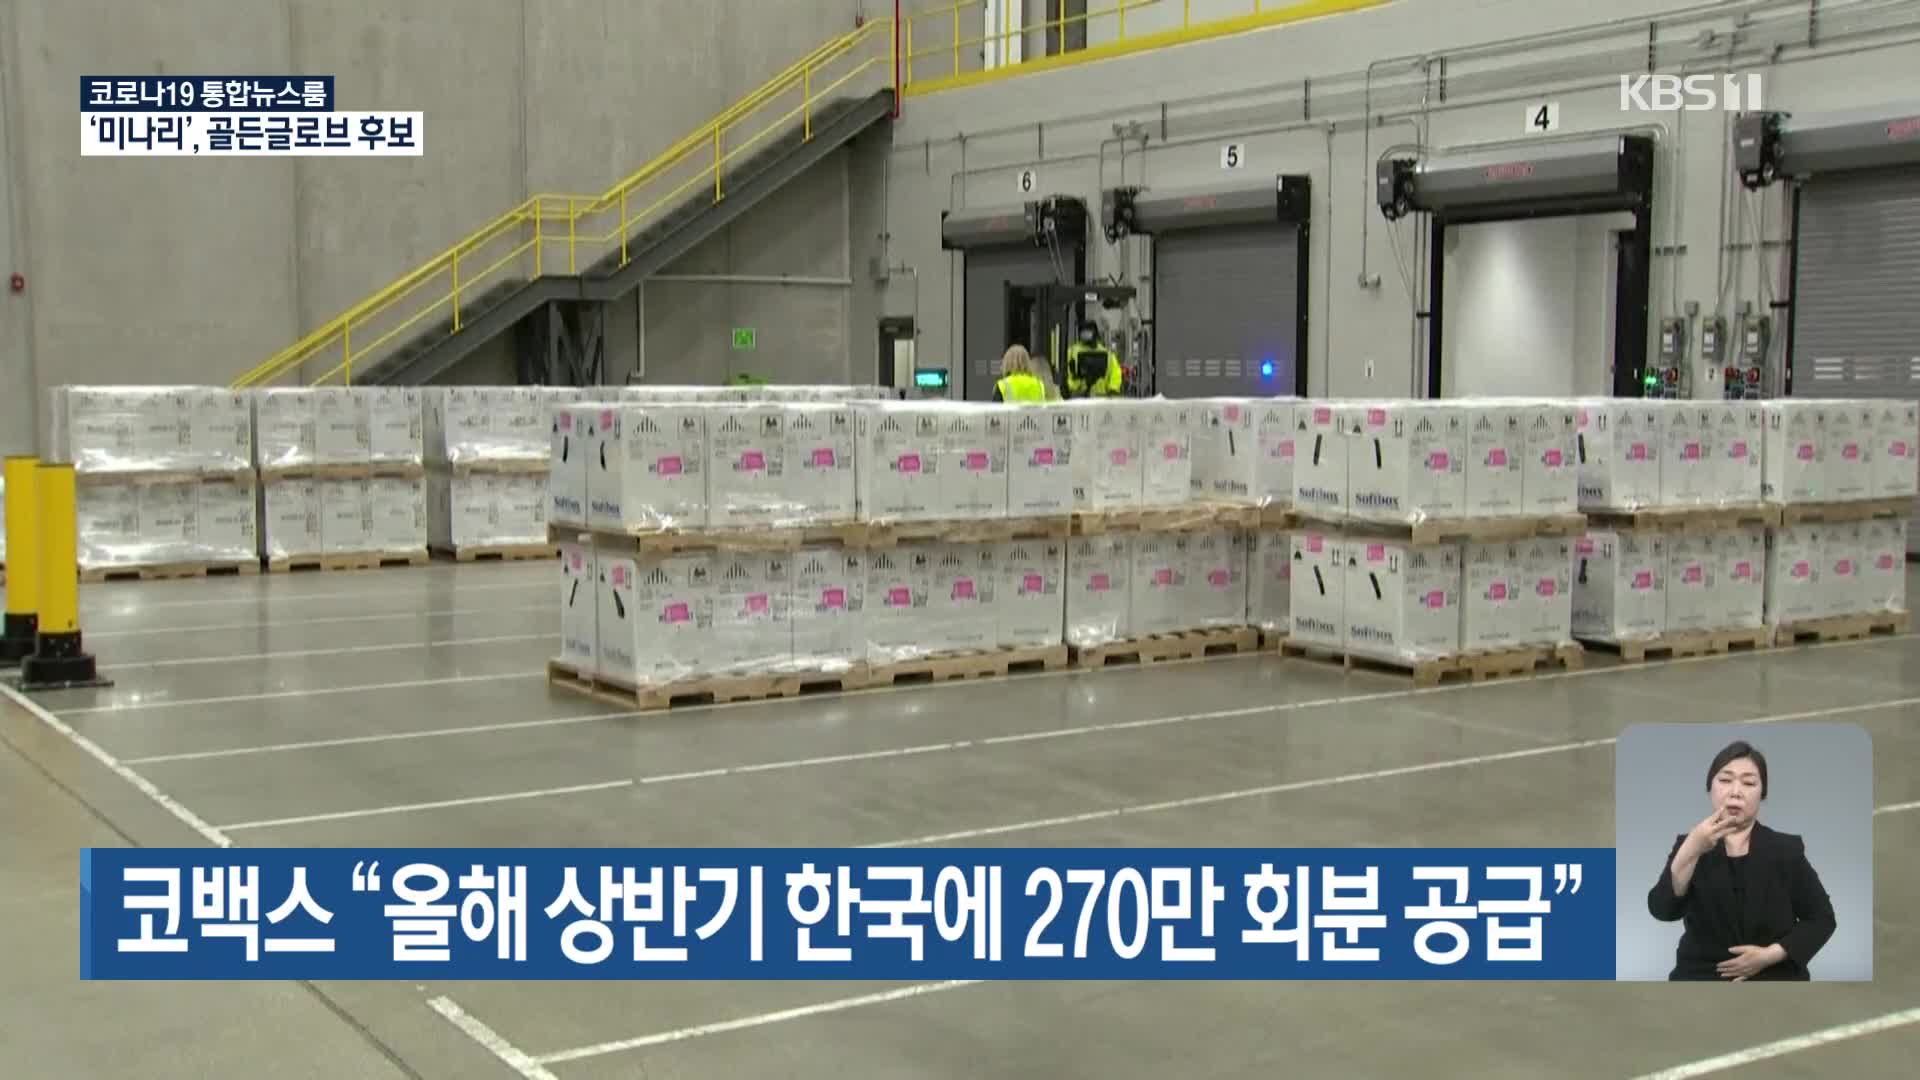 코백스 “올해 상반기 한국에 270만 회분 공급”